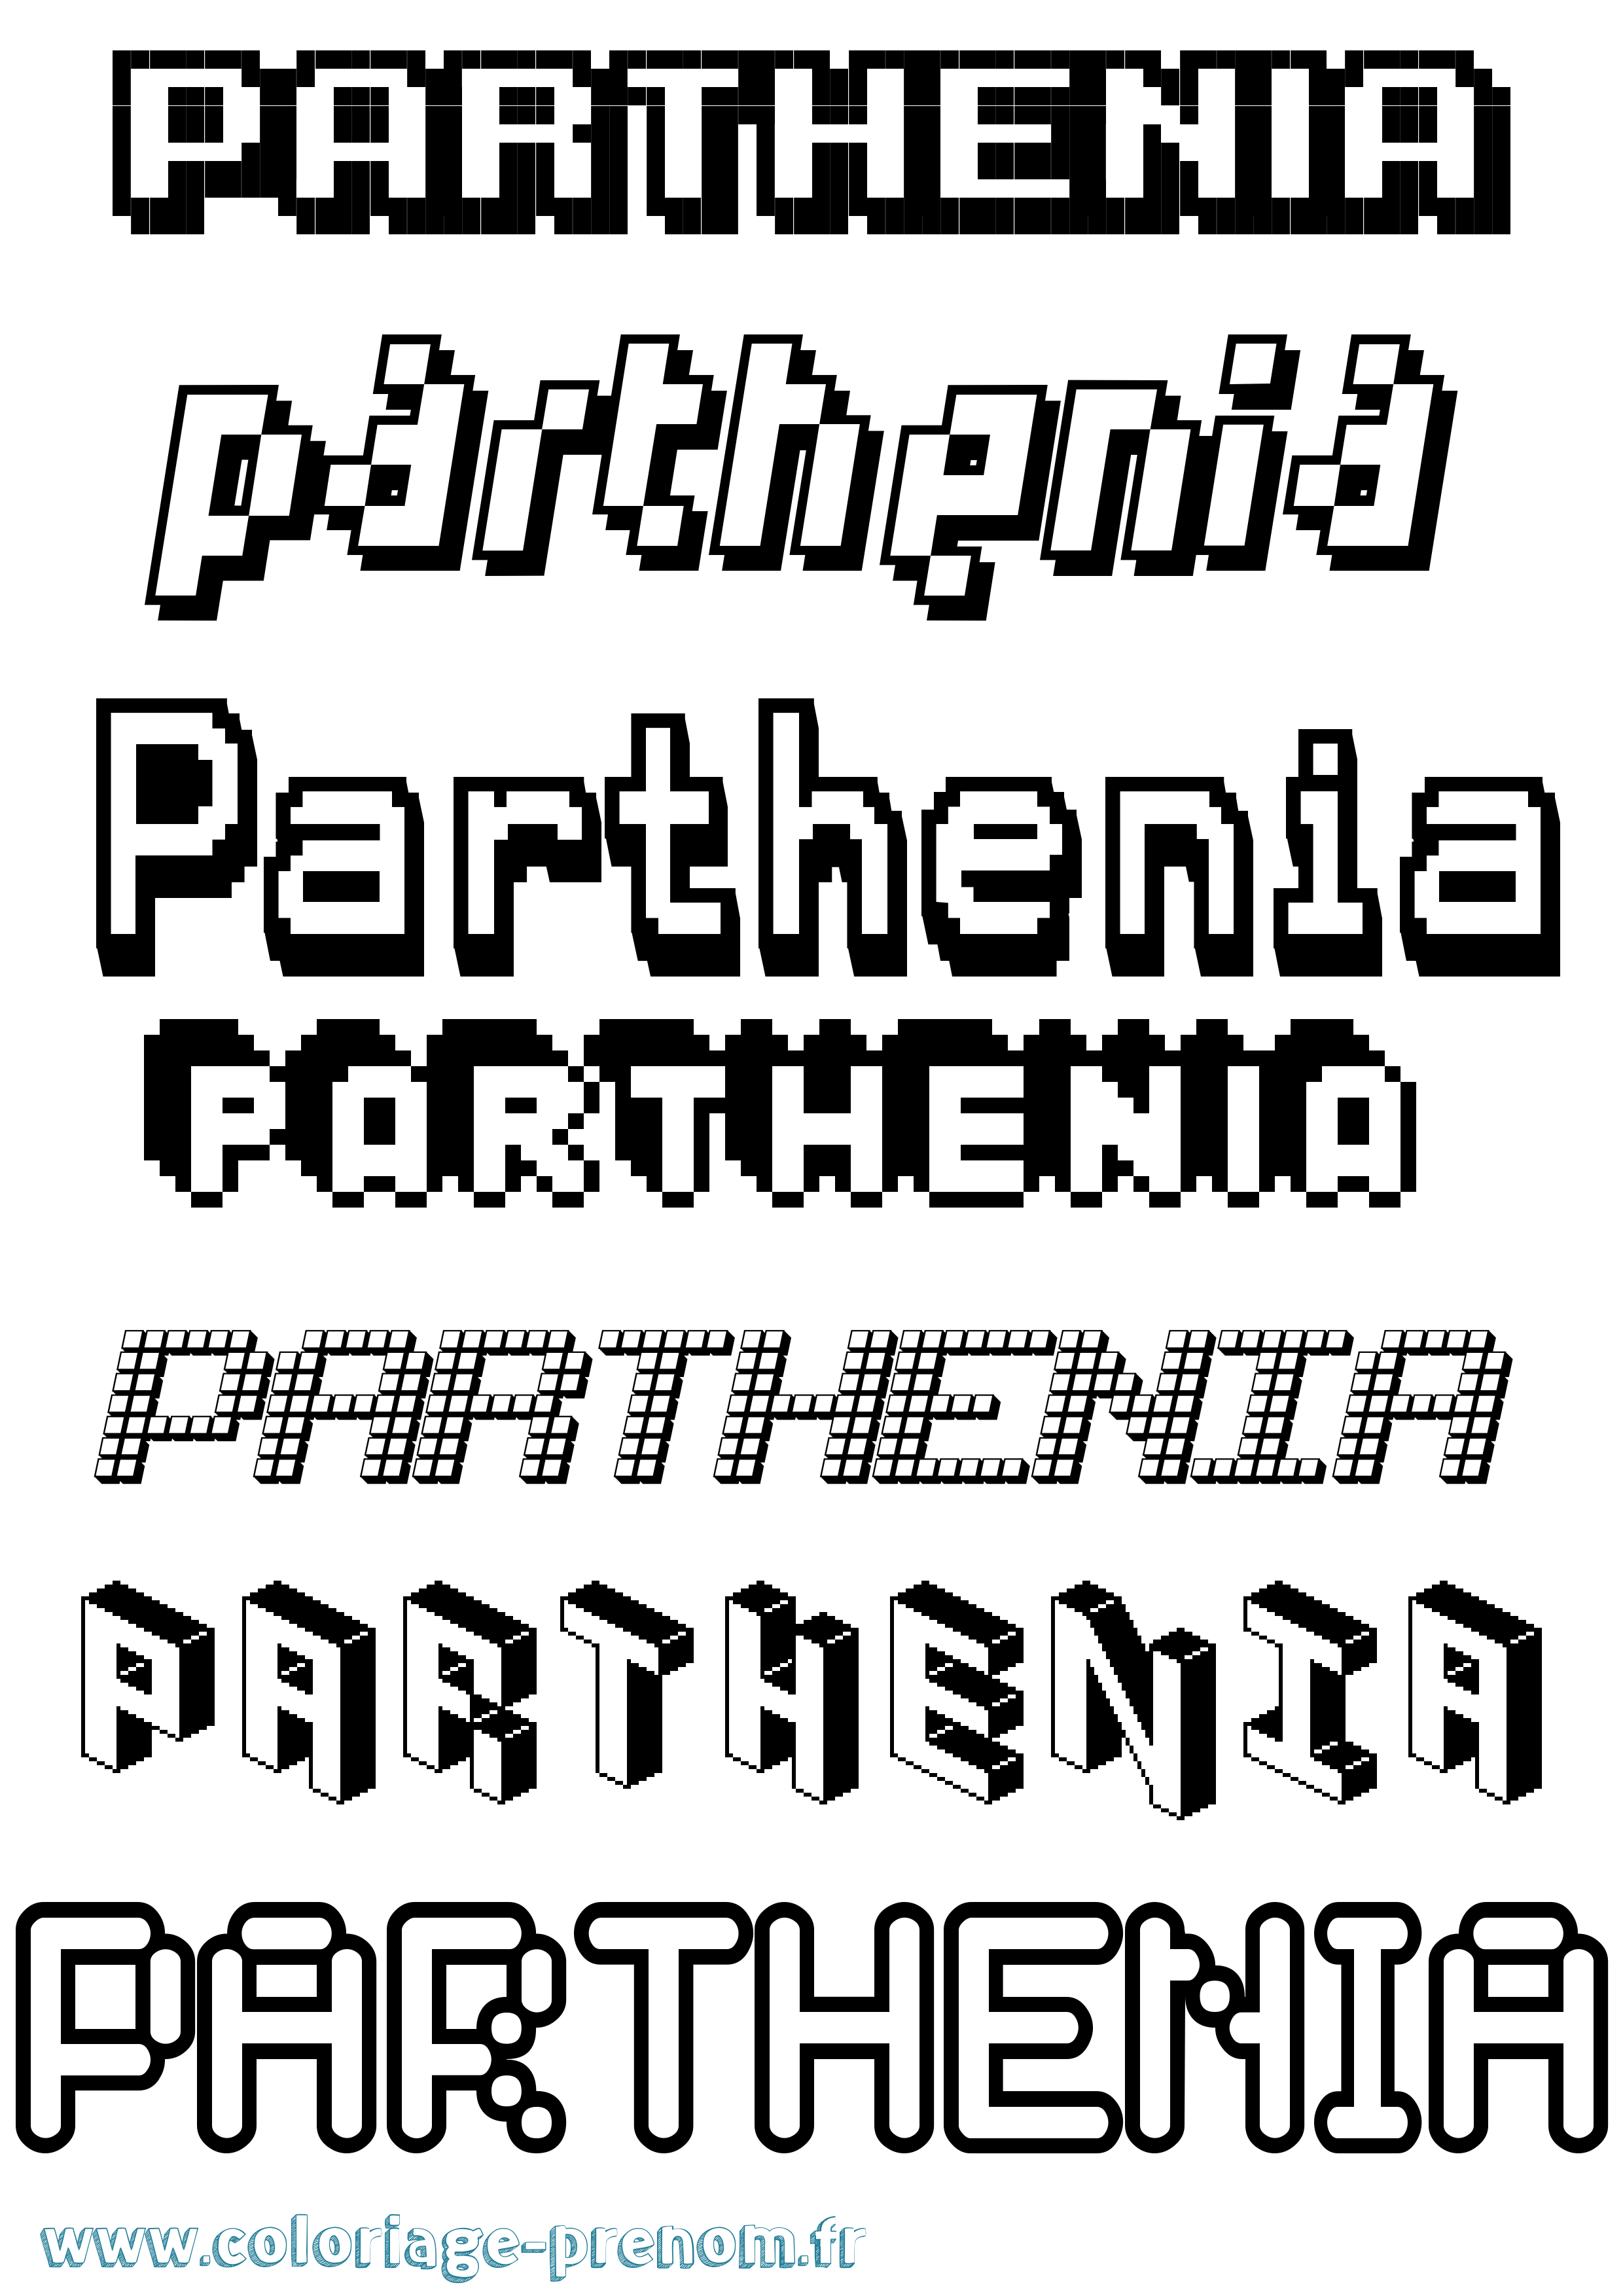 Coloriage prénom Parthenia Pixel